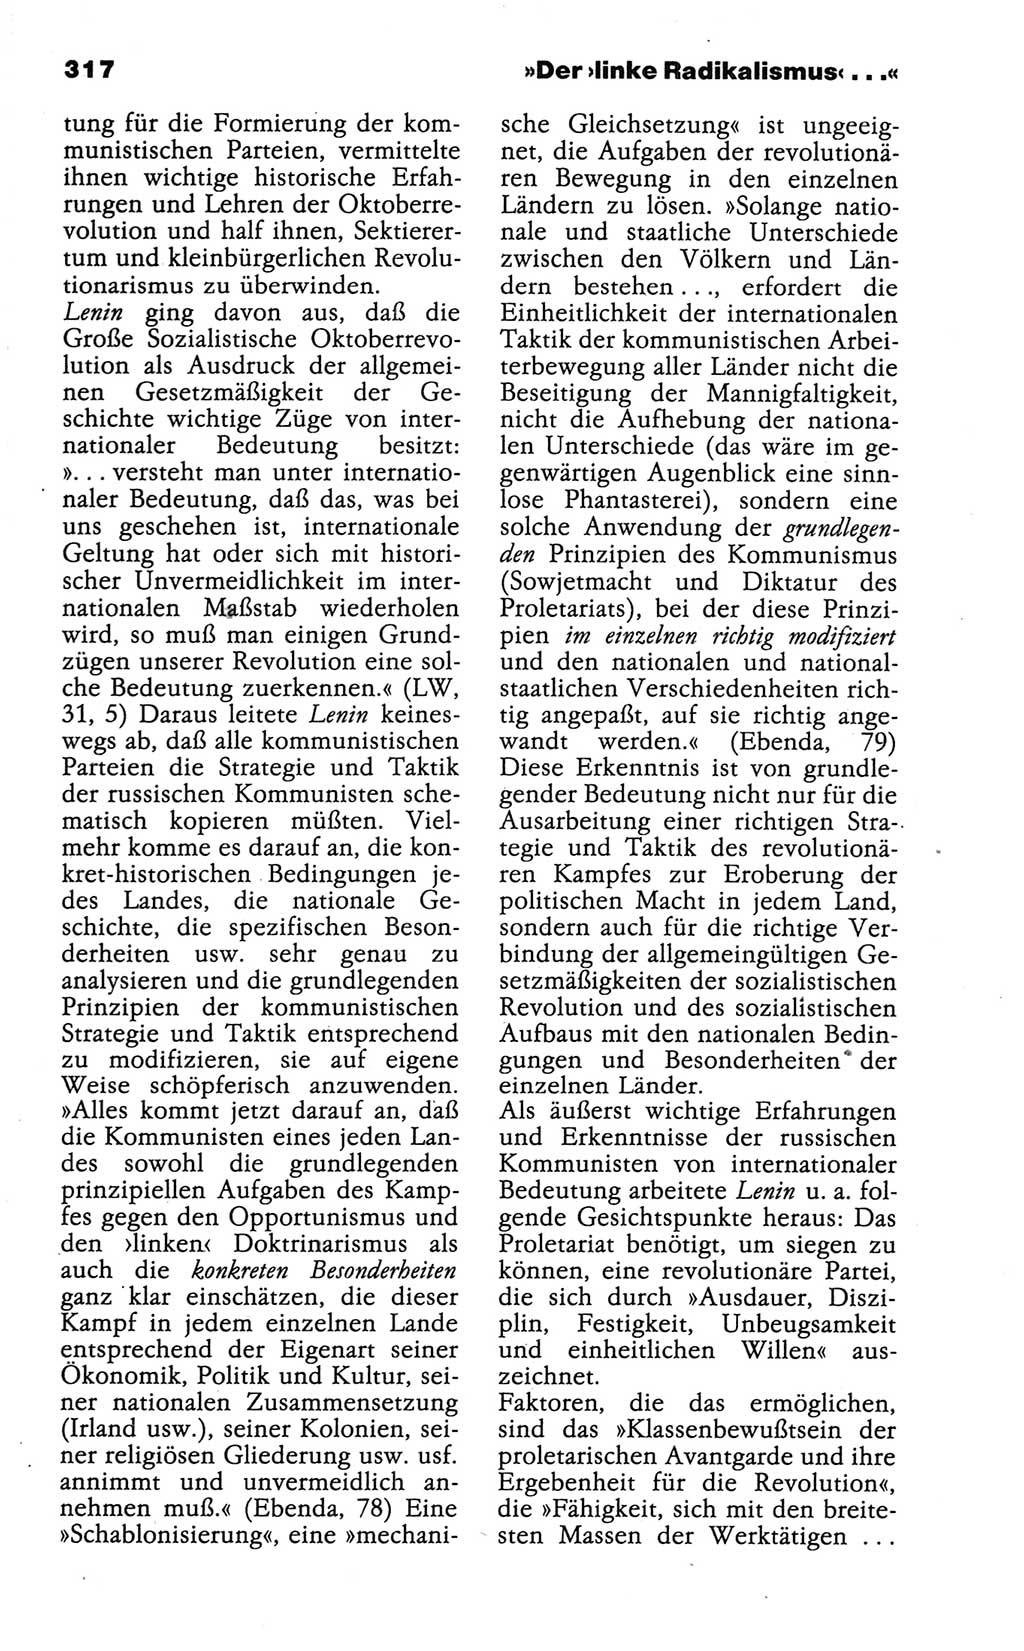 Wörterbuch der marxistisch-leninistischen Philosophie [Deutsche Demokratische Republik (DDR)] 1986, Seite 317 (Wb. ML Phil. DDR 1986, S. 317)